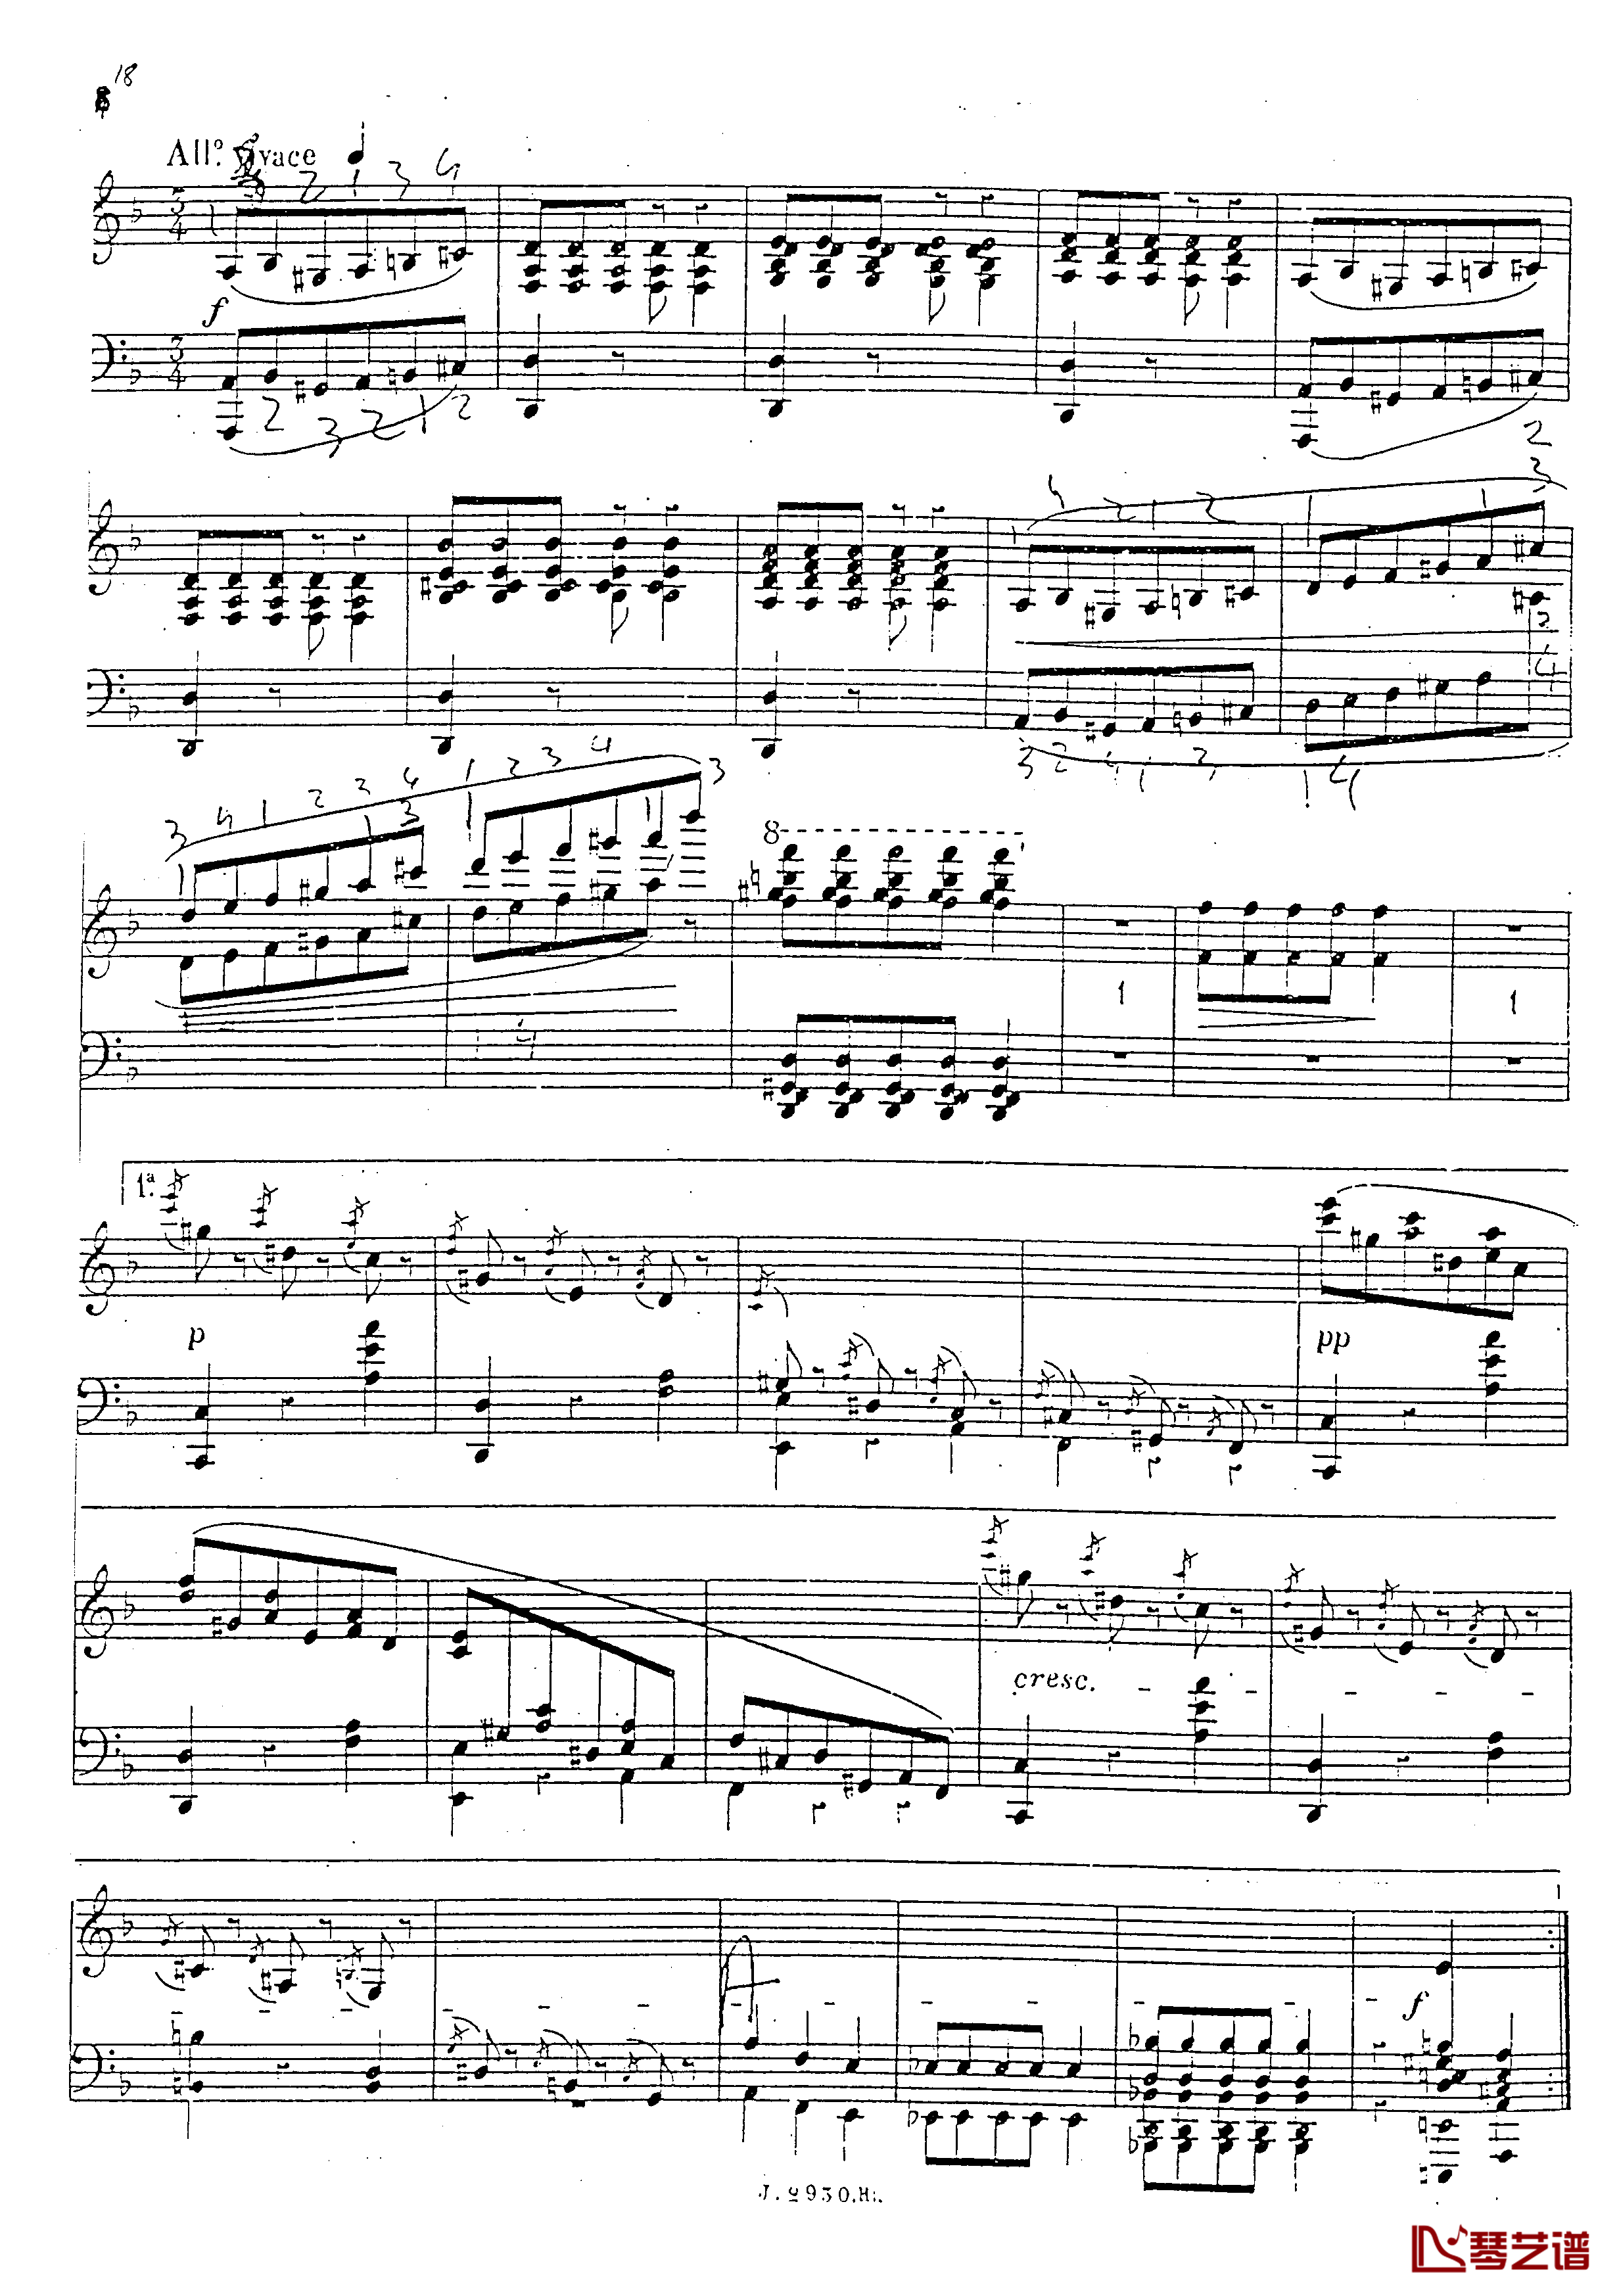 a小调第四钢琴奏鸣曲钢琴谱-安东 鲁宾斯坦- Op.10019